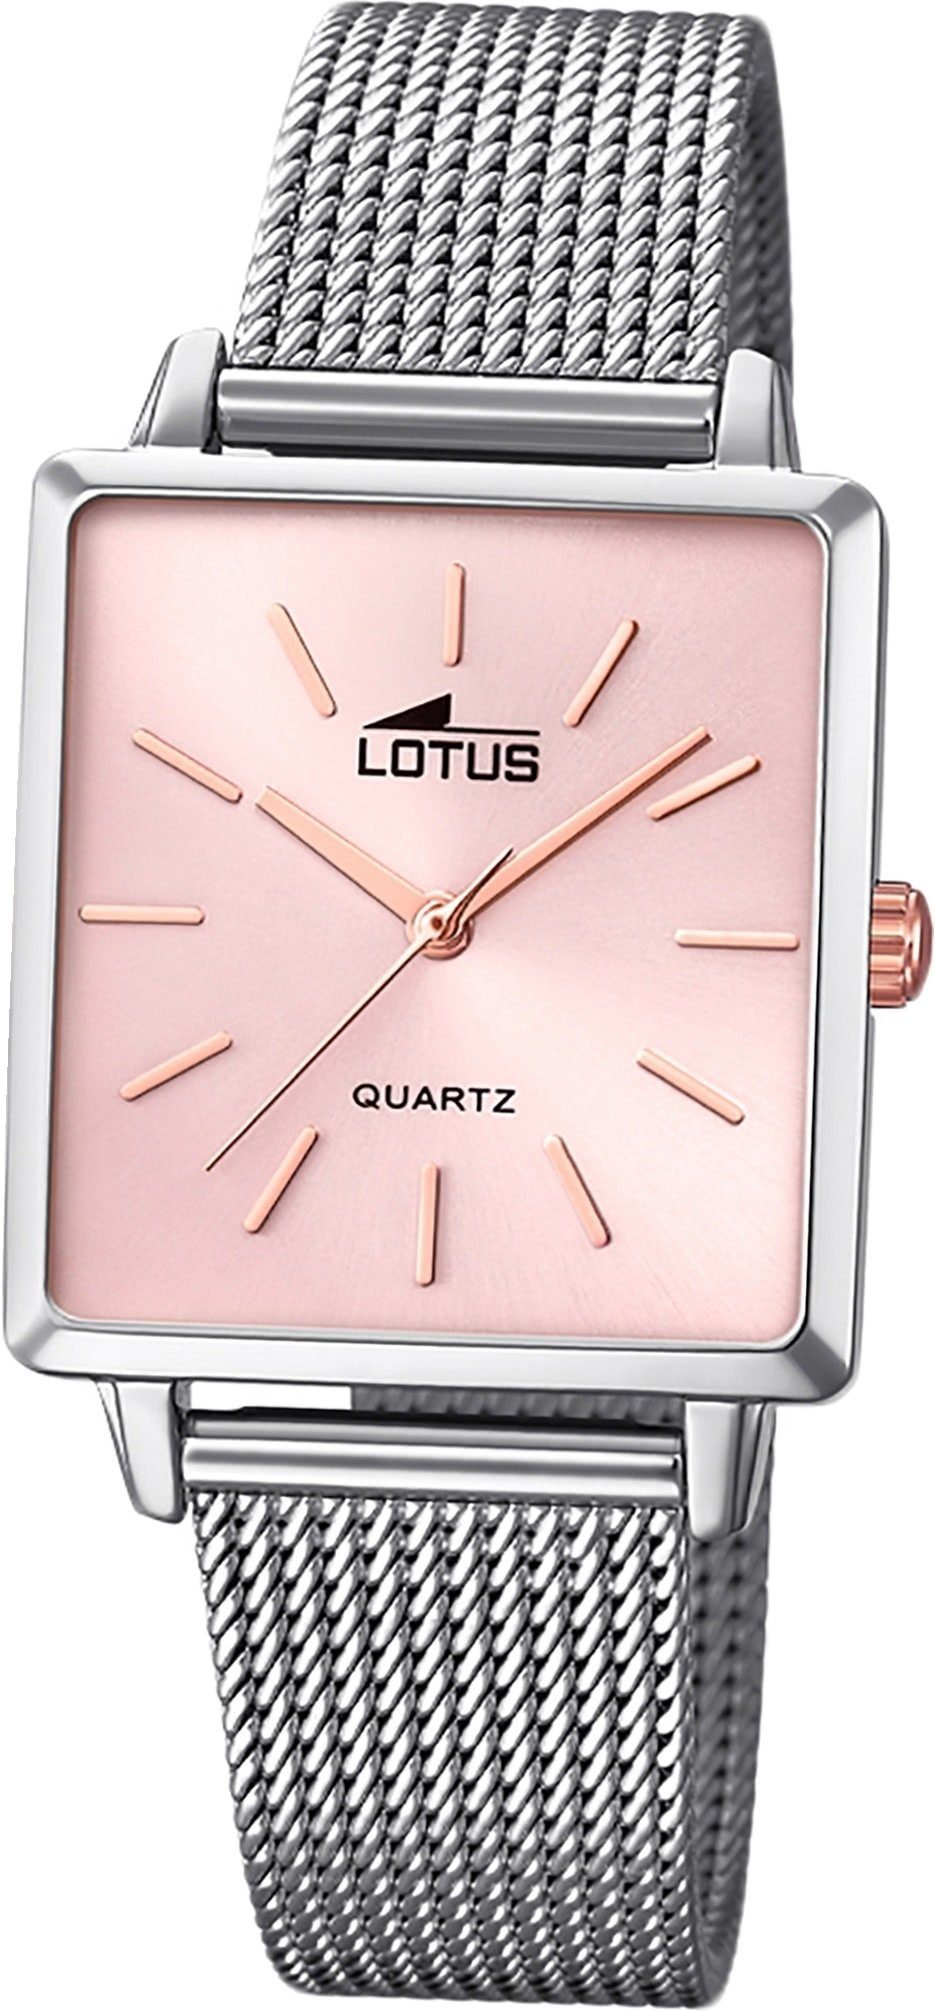 Lotus Quarzuhr LOTUS Edelstahl Damen Uhr 18718/2, Damenuhr mit Edelstahlarmband, eckiges Gehäuse, klein (ca. 27mm), Fash